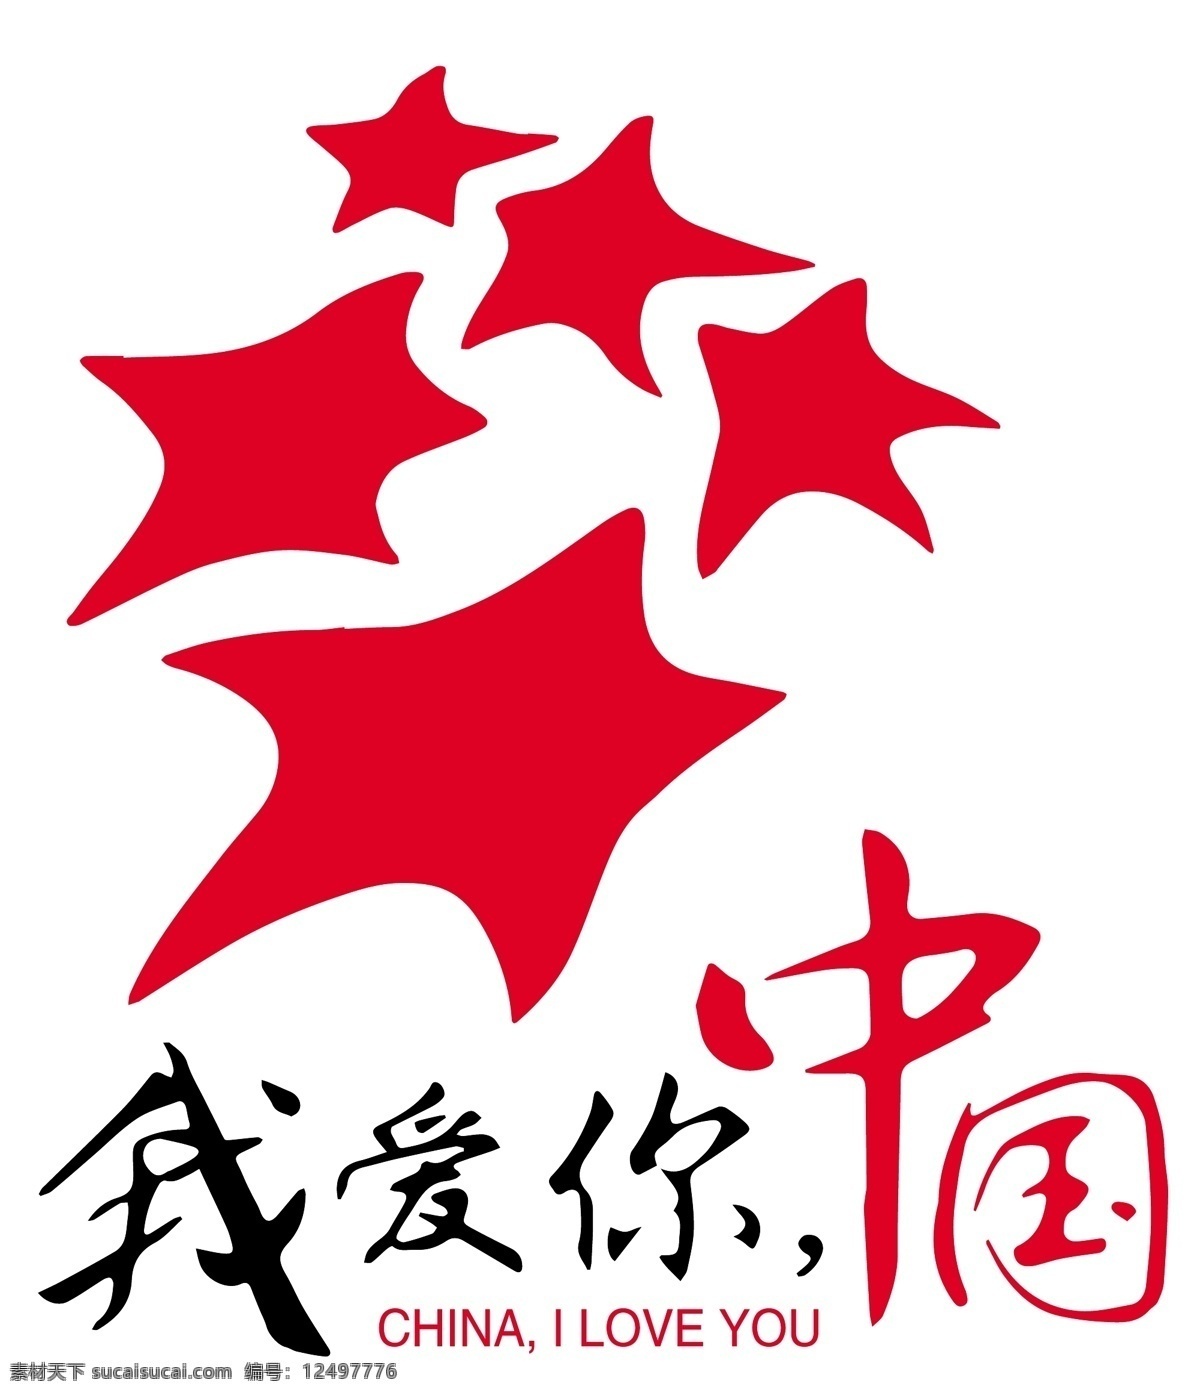 我爱你中国 五角星 红色五角星 中国 logo logo设计